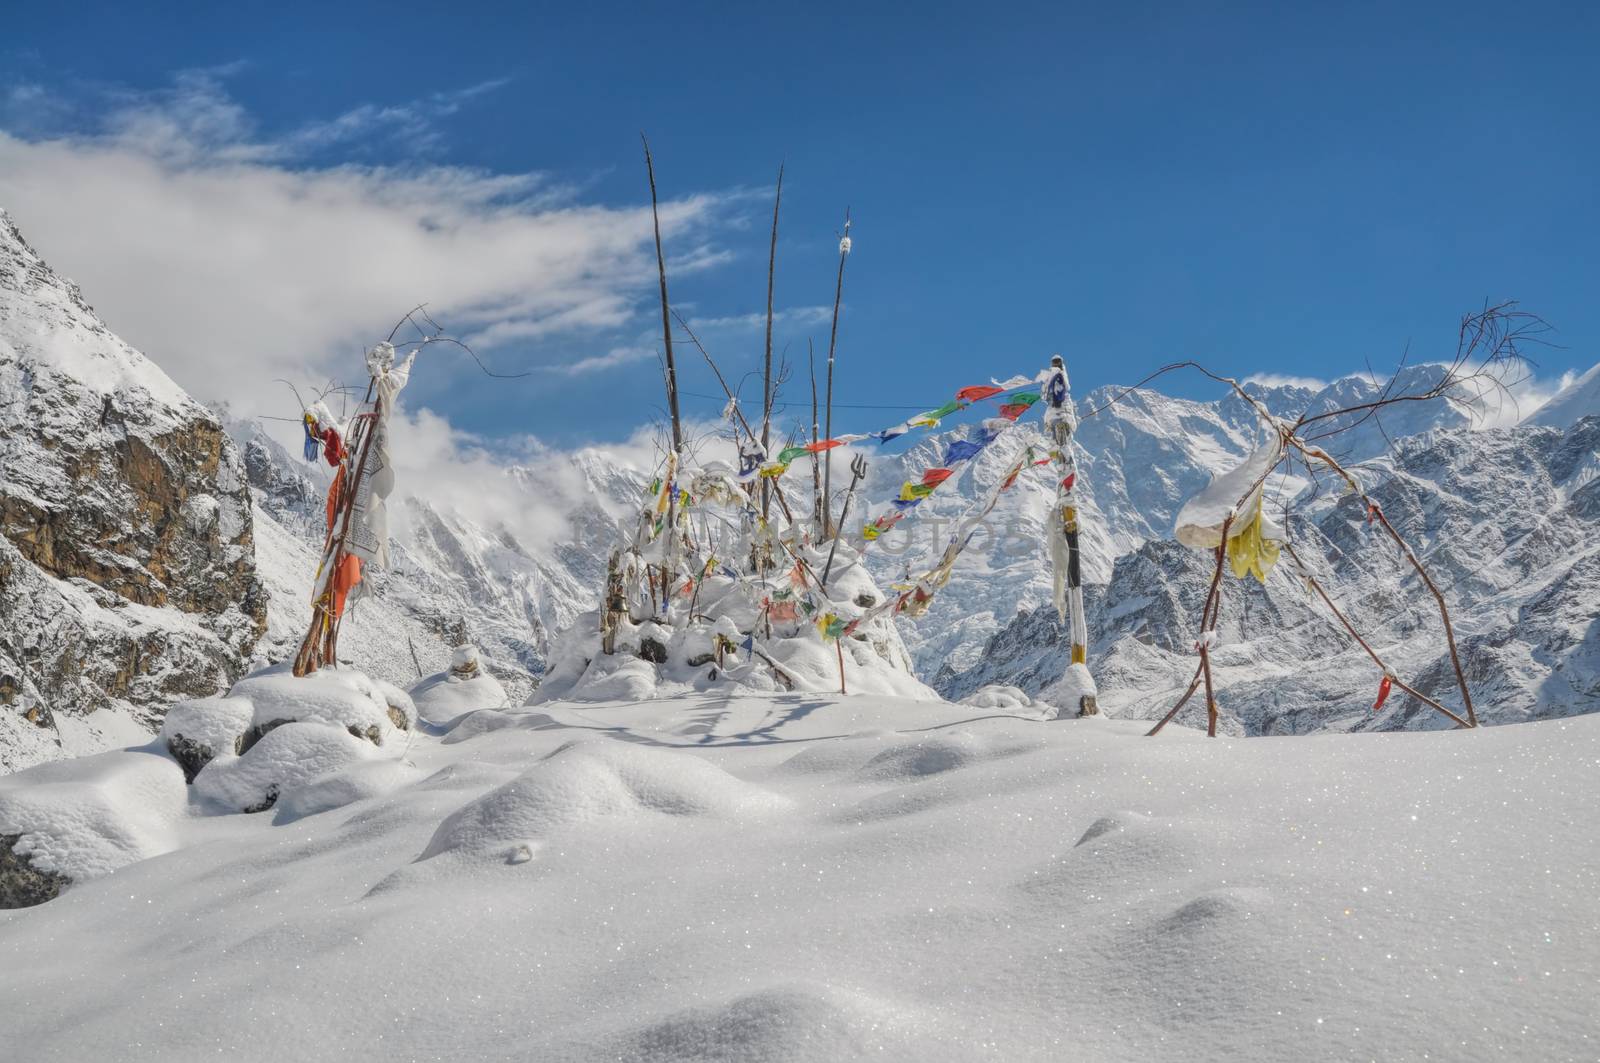 Himalayas near Kanchenjunga by MichalKnitl